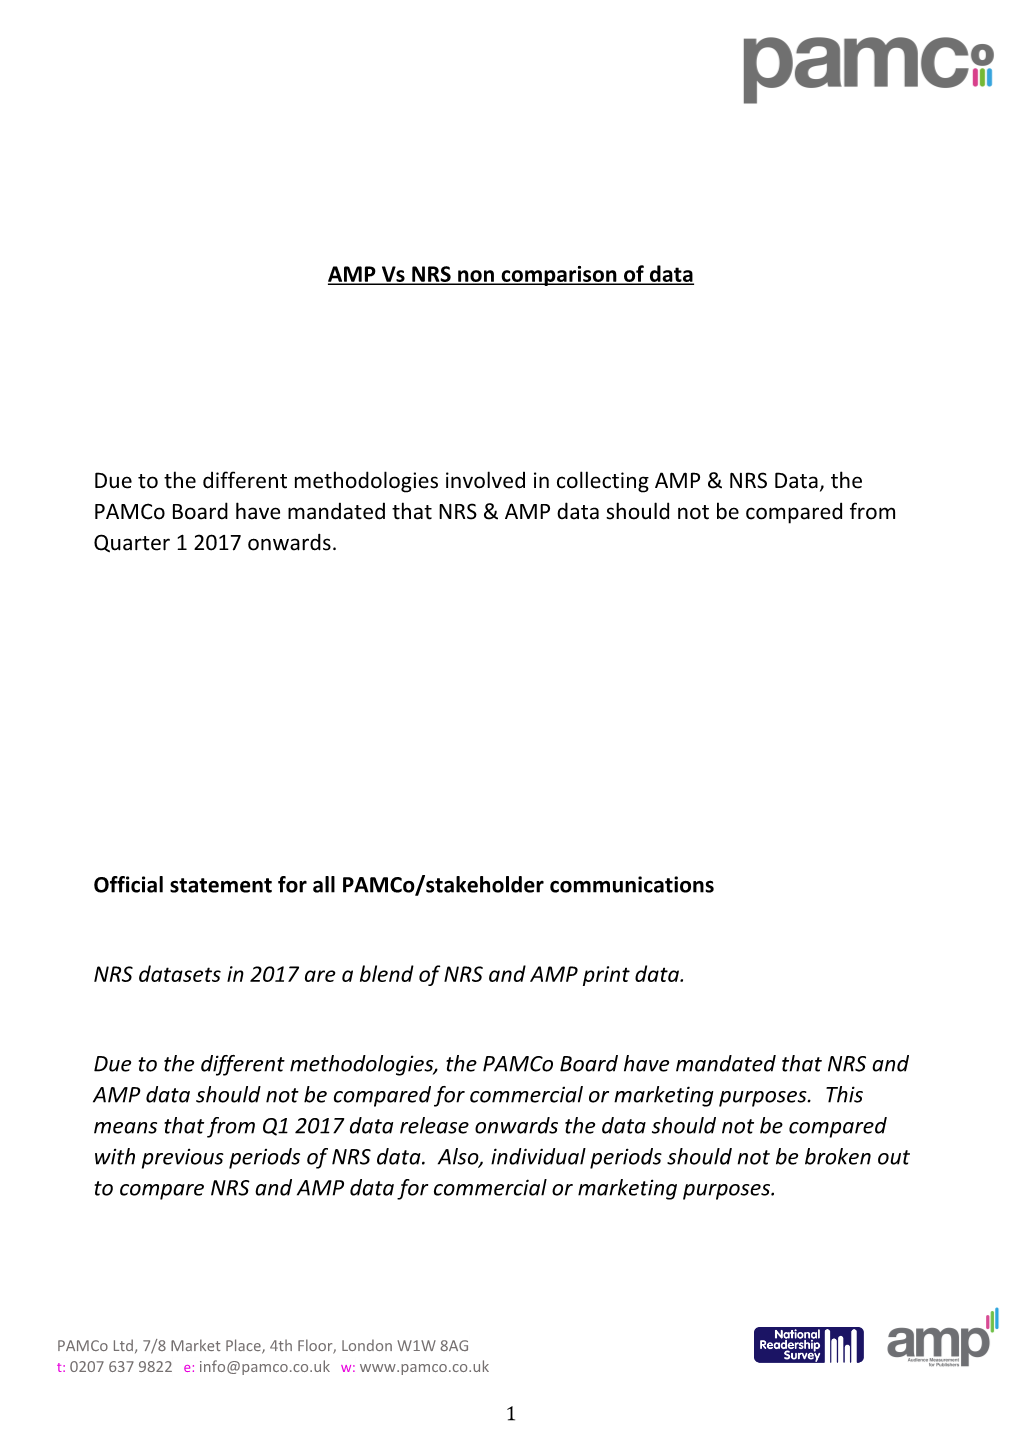 AMP Vs NRS Non Comparison of Data